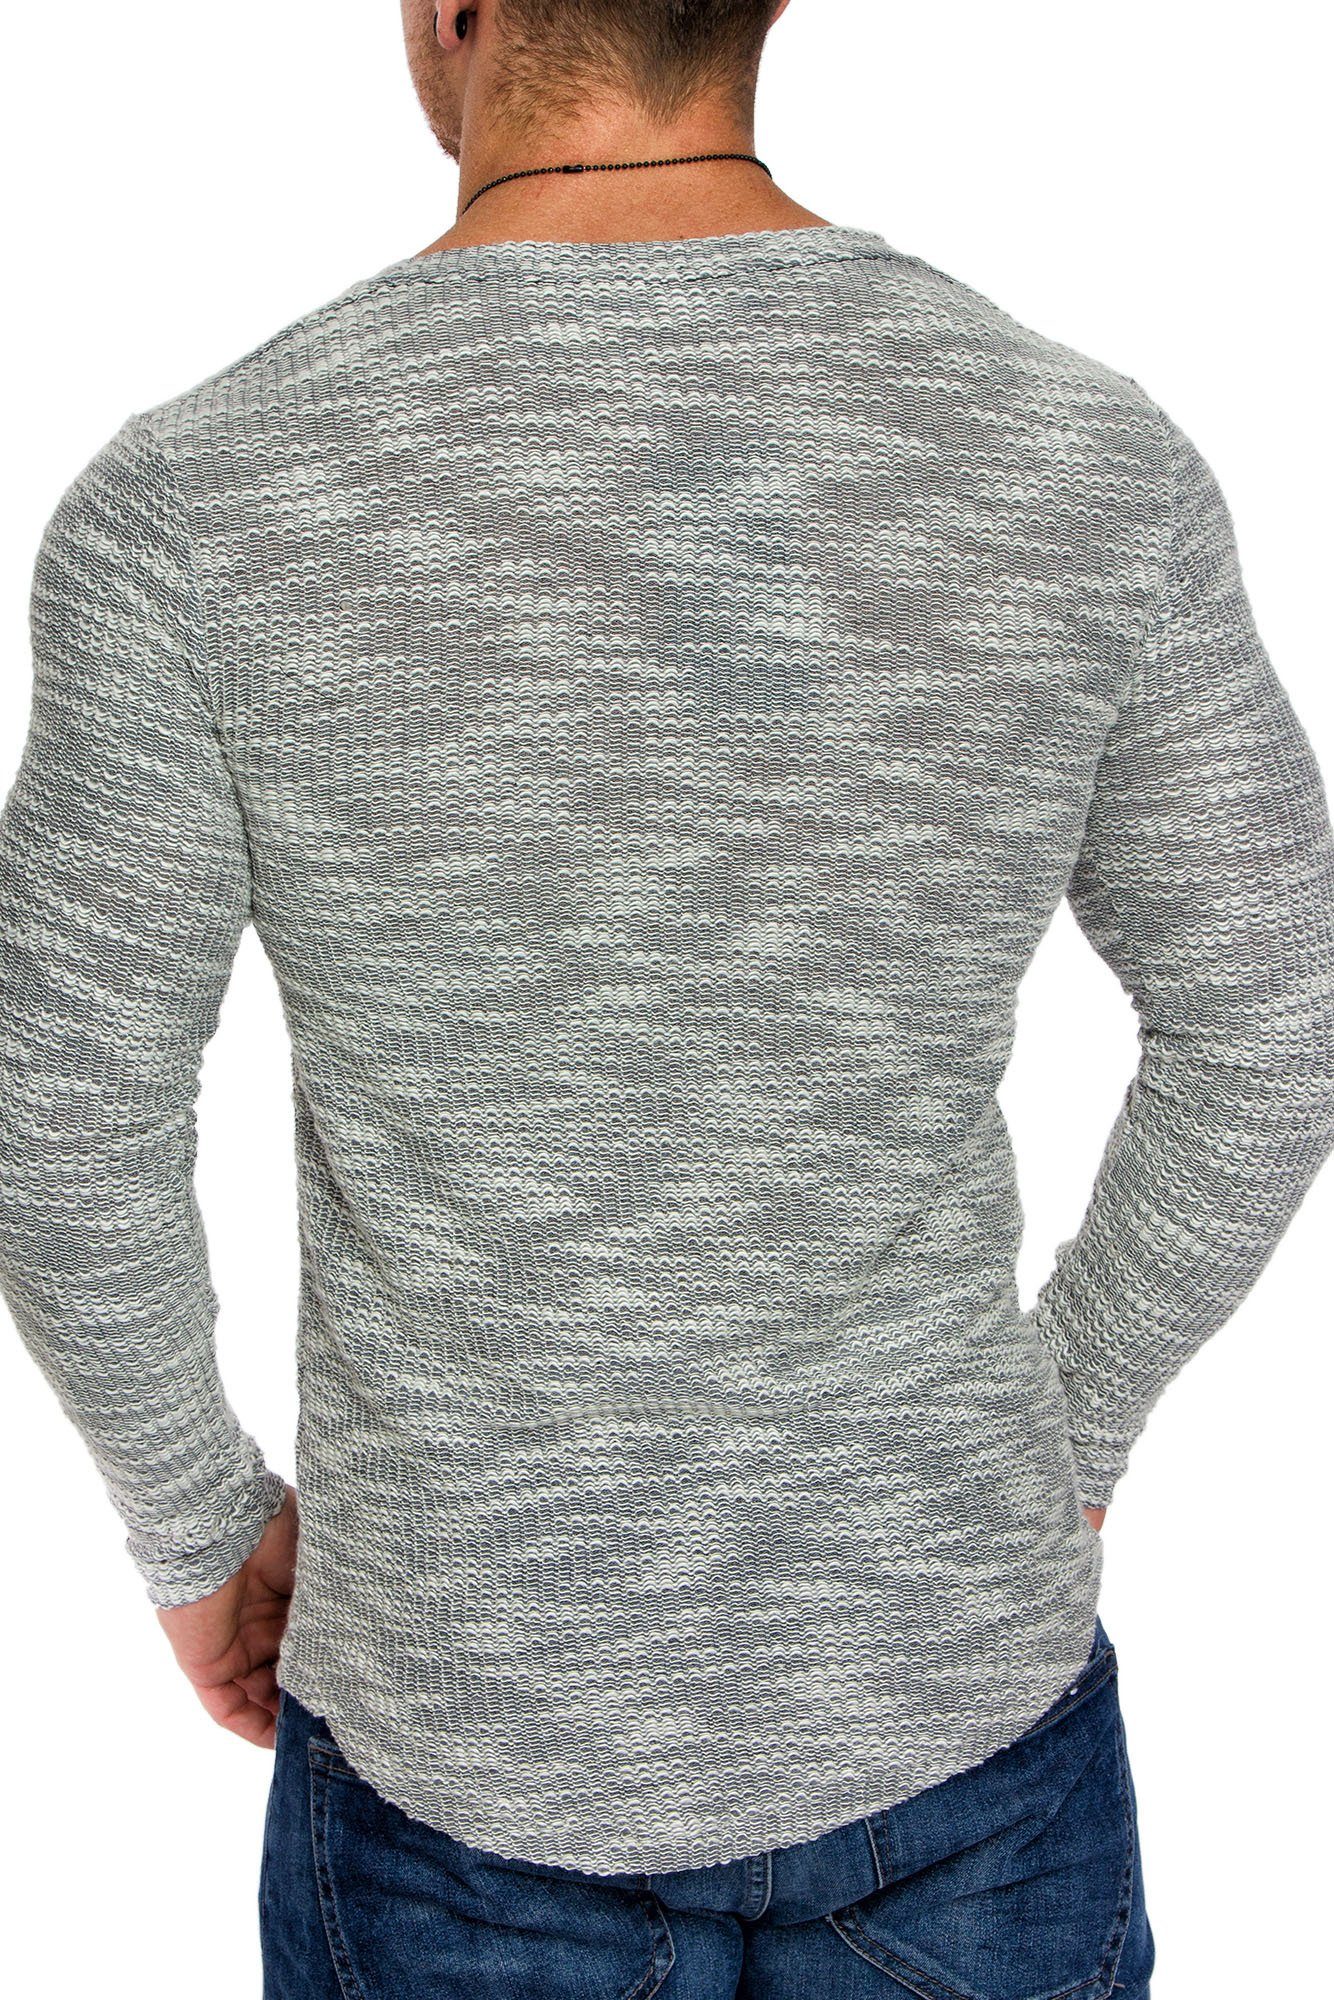 Vintage Grau Sweatshirt Herren NAMPA Rundhalsausschnitt Amaci&Sons mit Rundhalsausschnitt Sweatshirt Hoodie Sweatshirt Pullover